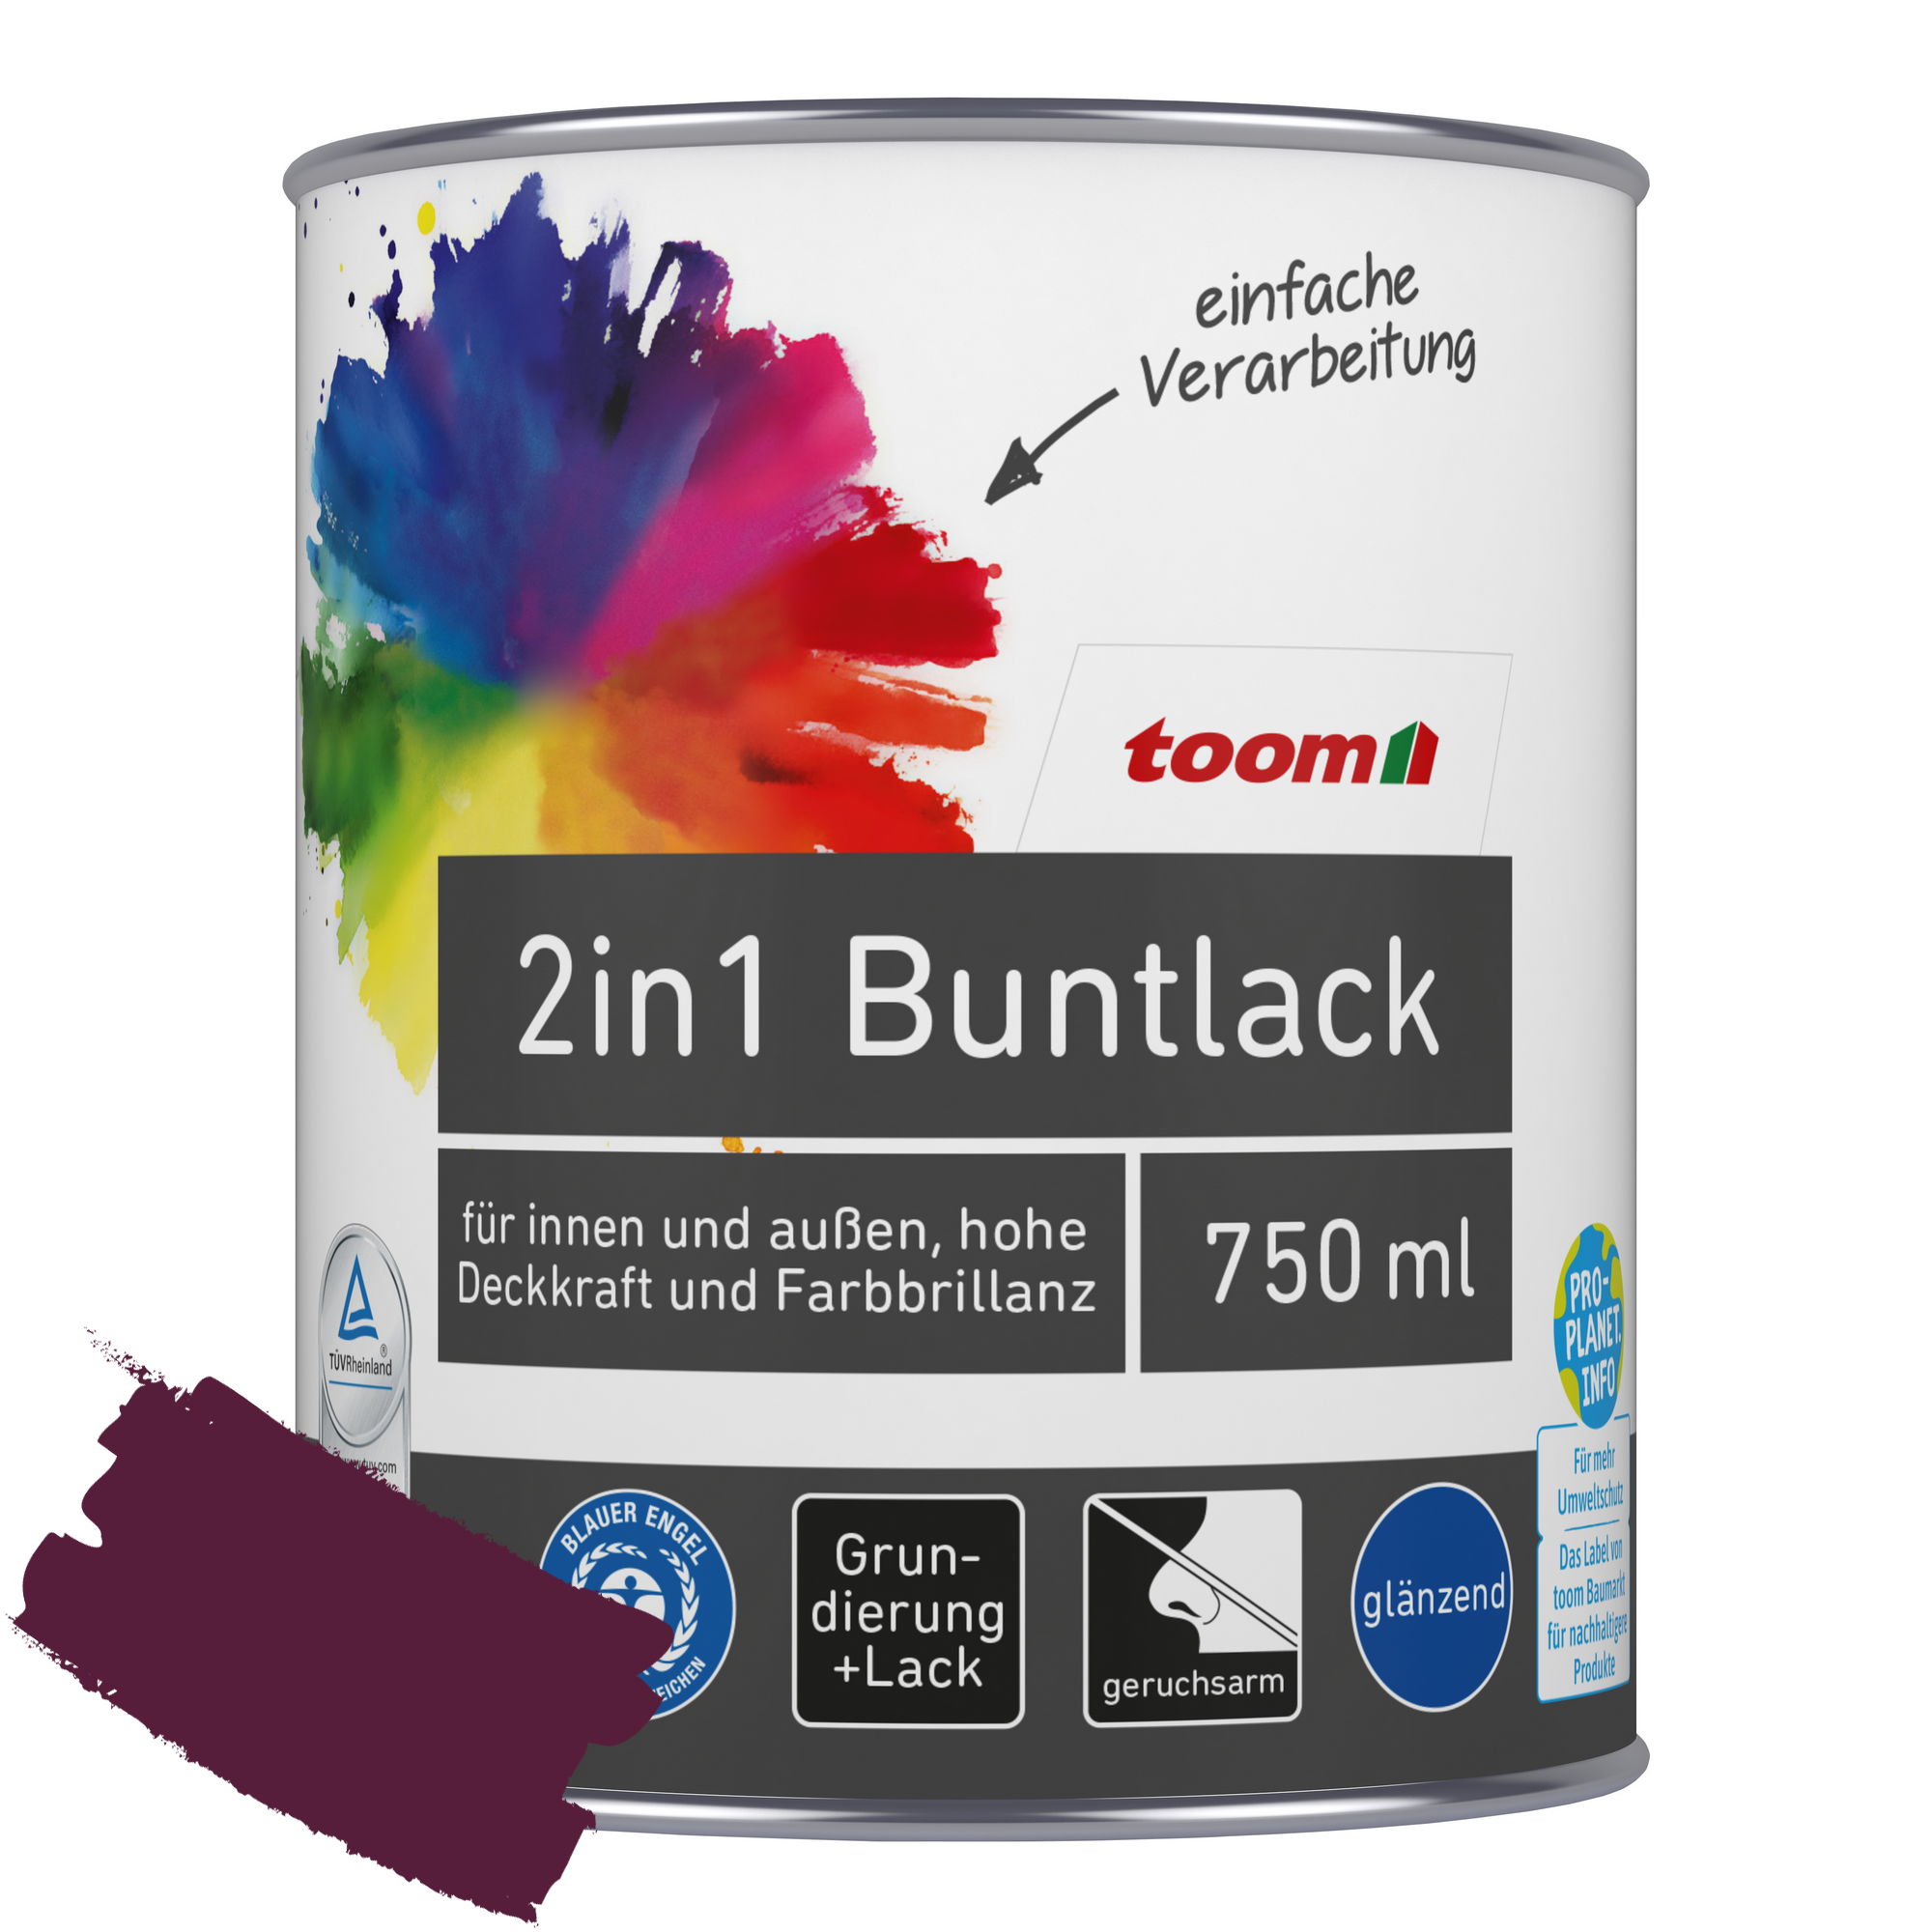 2in1 Buntlack merlotfarben glänzend 750 ml + product picture